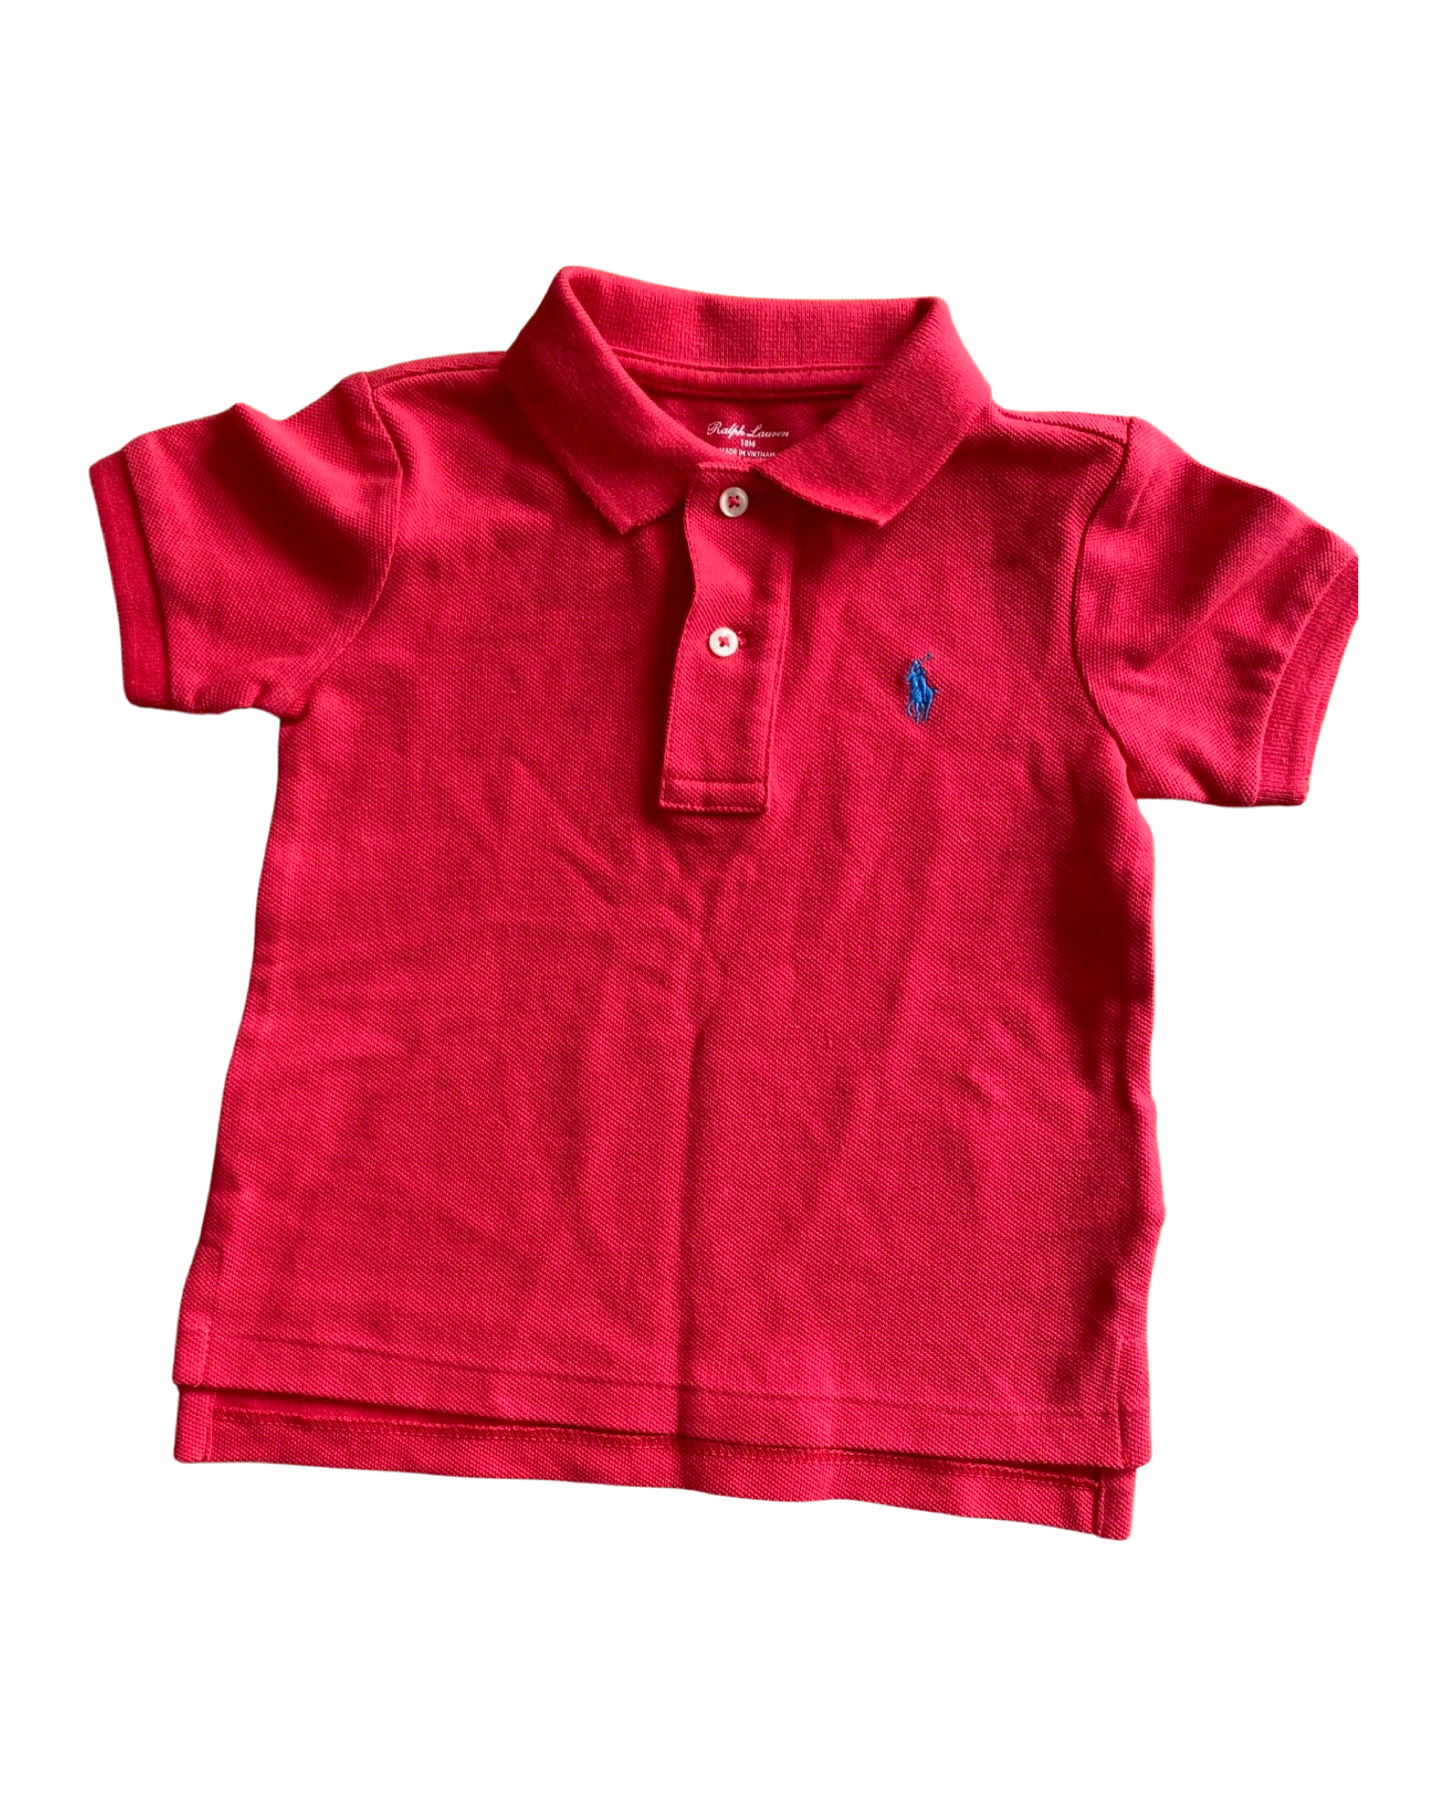 Ralph Lauren short sleeve coral red polo shirt (12-18mths)